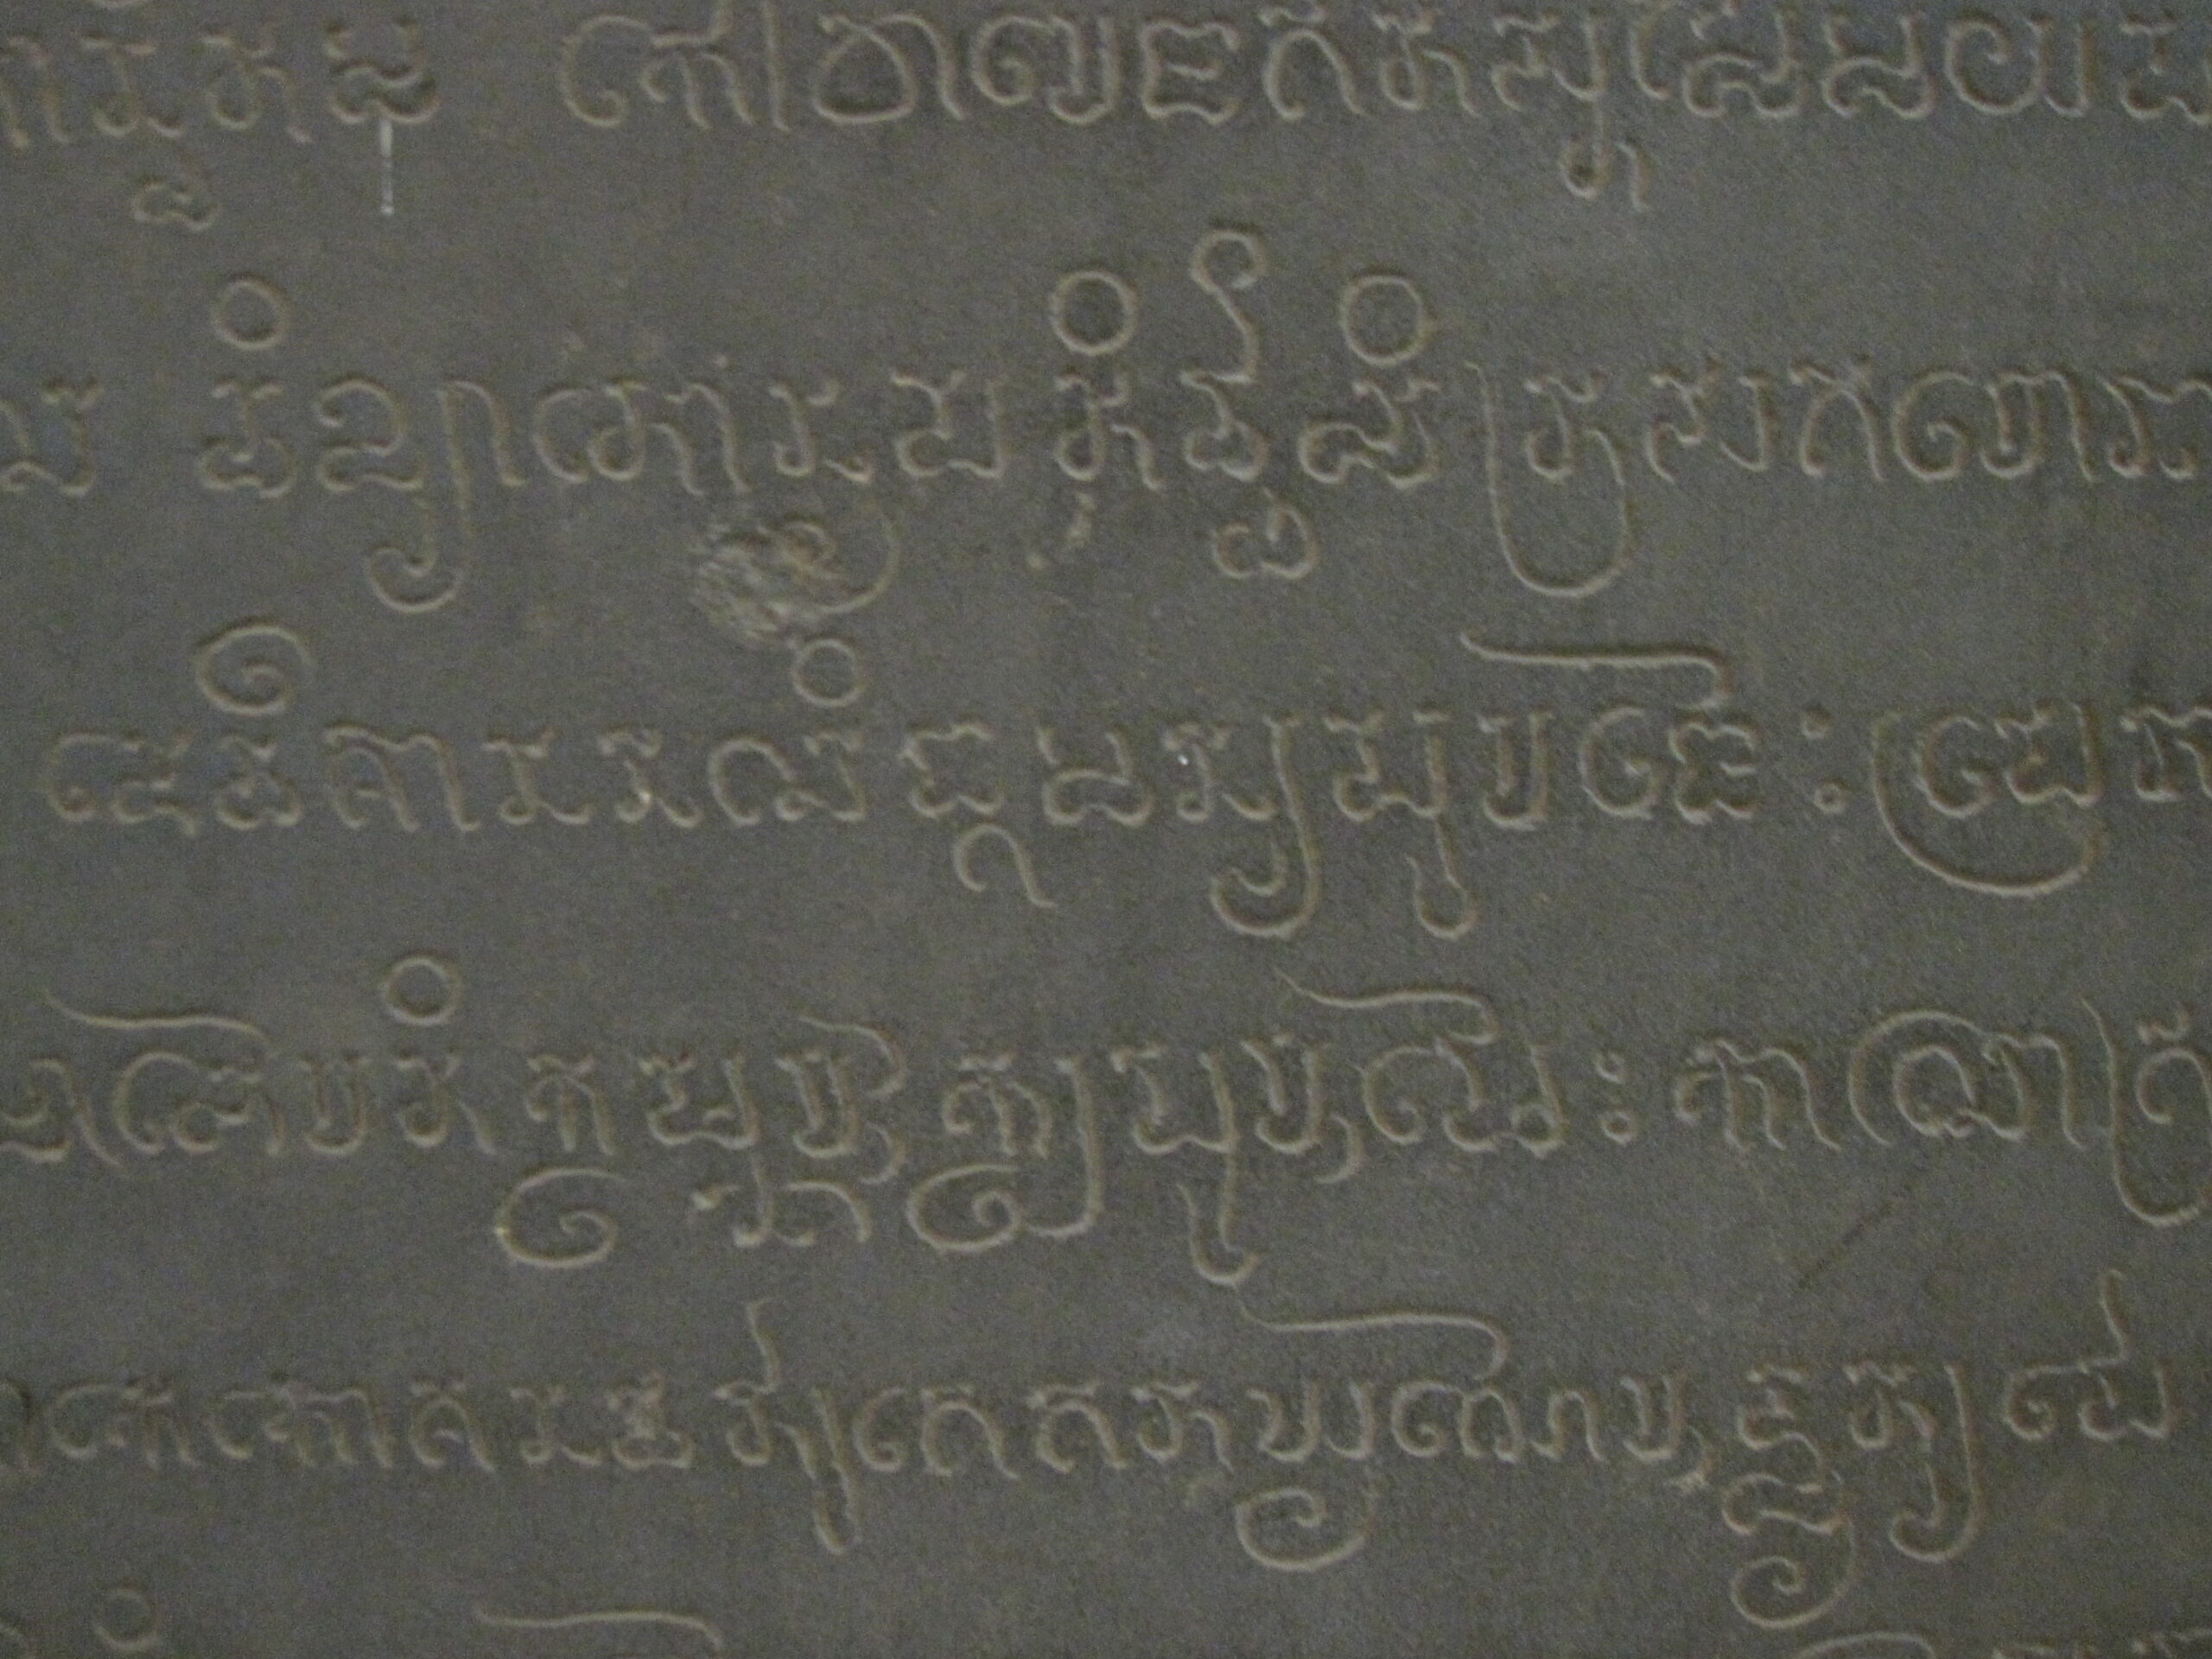 Le cham, une langue historique de la royauté vietnamienne